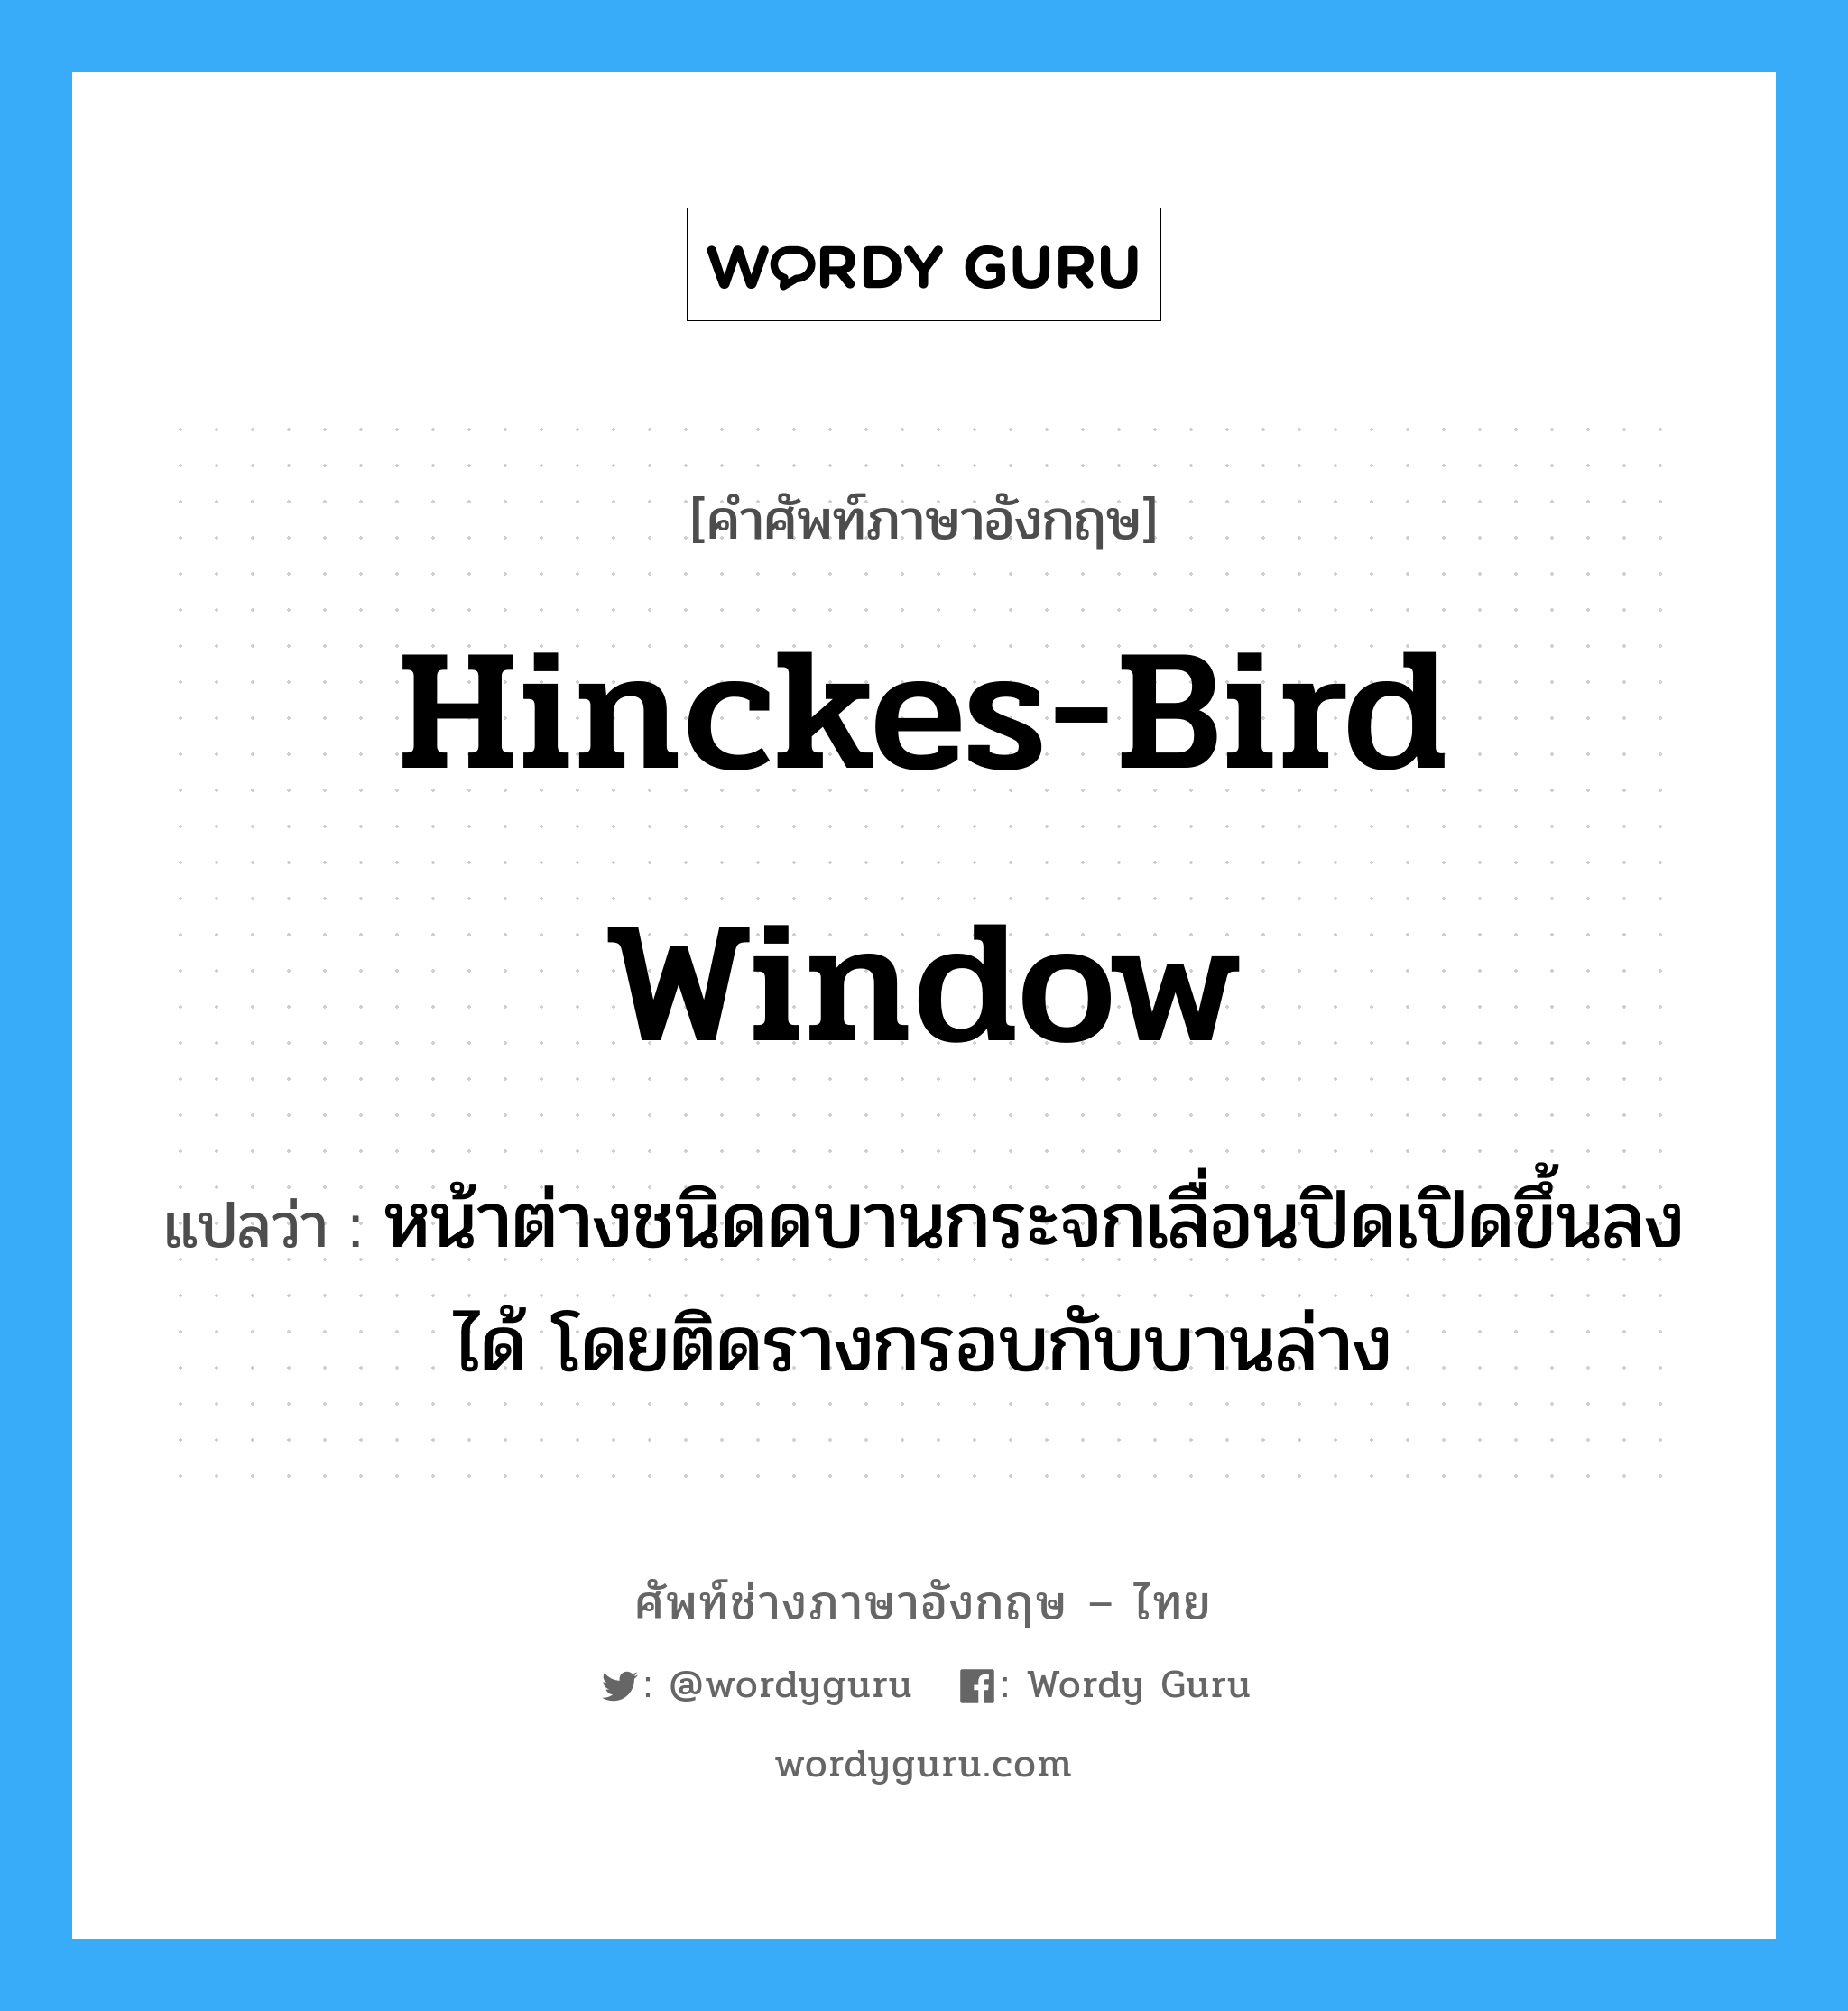 hinckes-bird window แปลว่า?, คำศัพท์ช่างภาษาอังกฤษ - ไทย hinckes-bird window คำศัพท์ภาษาอังกฤษ hinckes-bird window แปลว่า หน้าต่างชนิดดบานกระจกเลื่อนปิดเปิดขึ้นลงได้ โดยติดรางกรอบกับบานล่าง